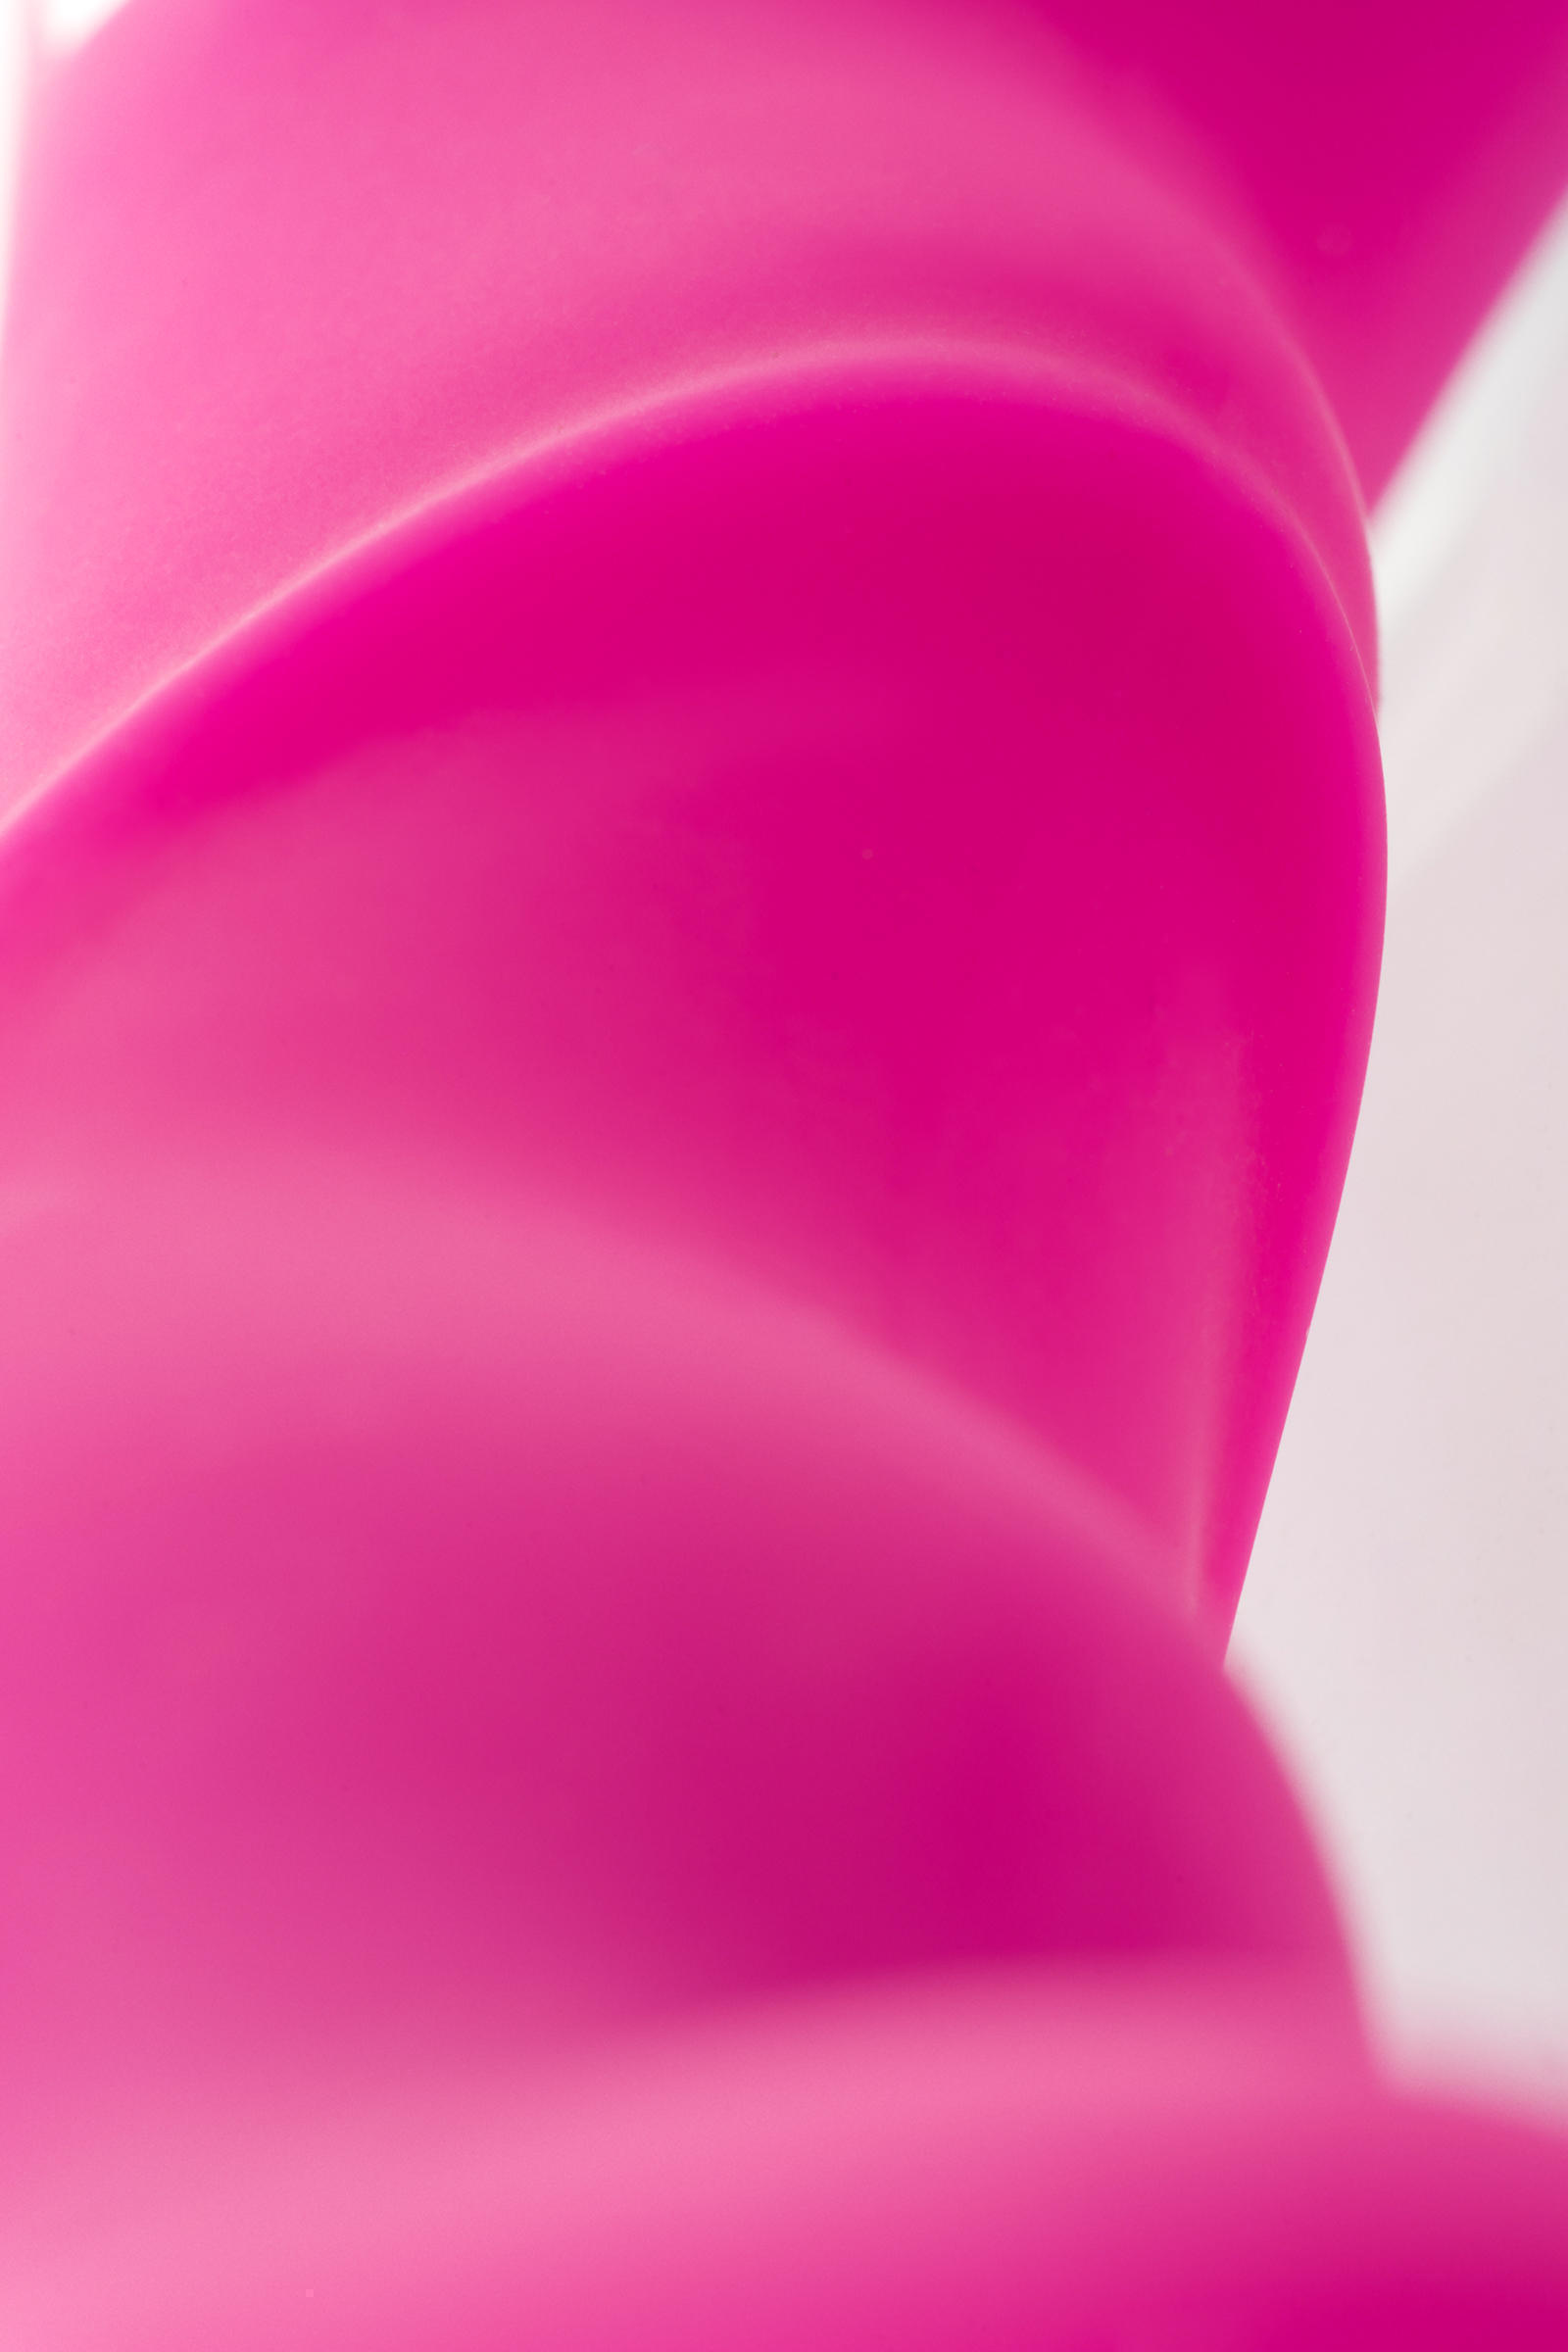 Стимулятор точки G JOS AVE, анатомическая форма, розовый, 21 см